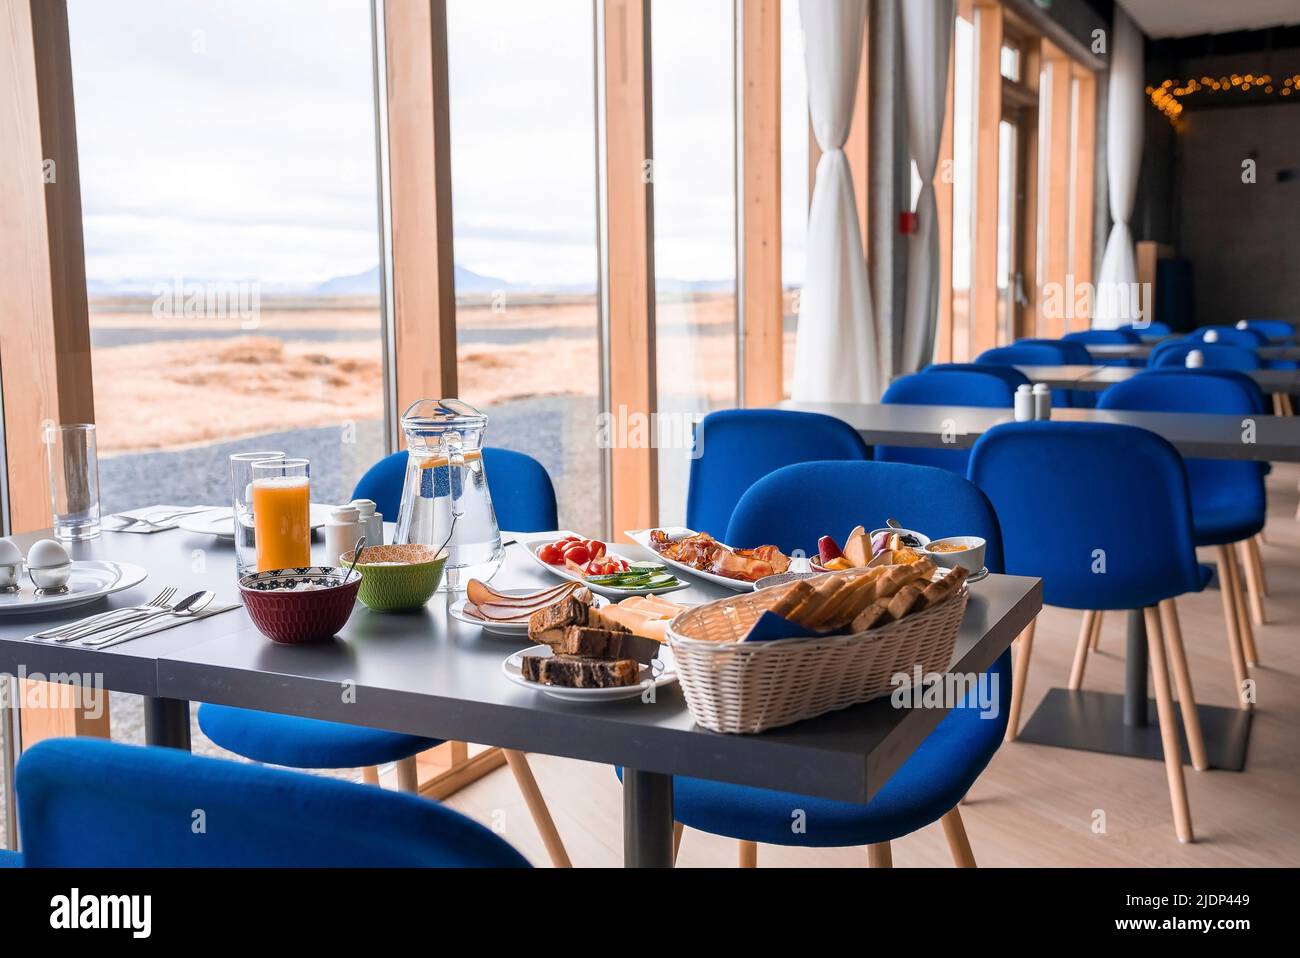 Im luxuriösen Restaurant wird ein köstliches Frühstück am Esstisch am Fenster serviert Stockfoto